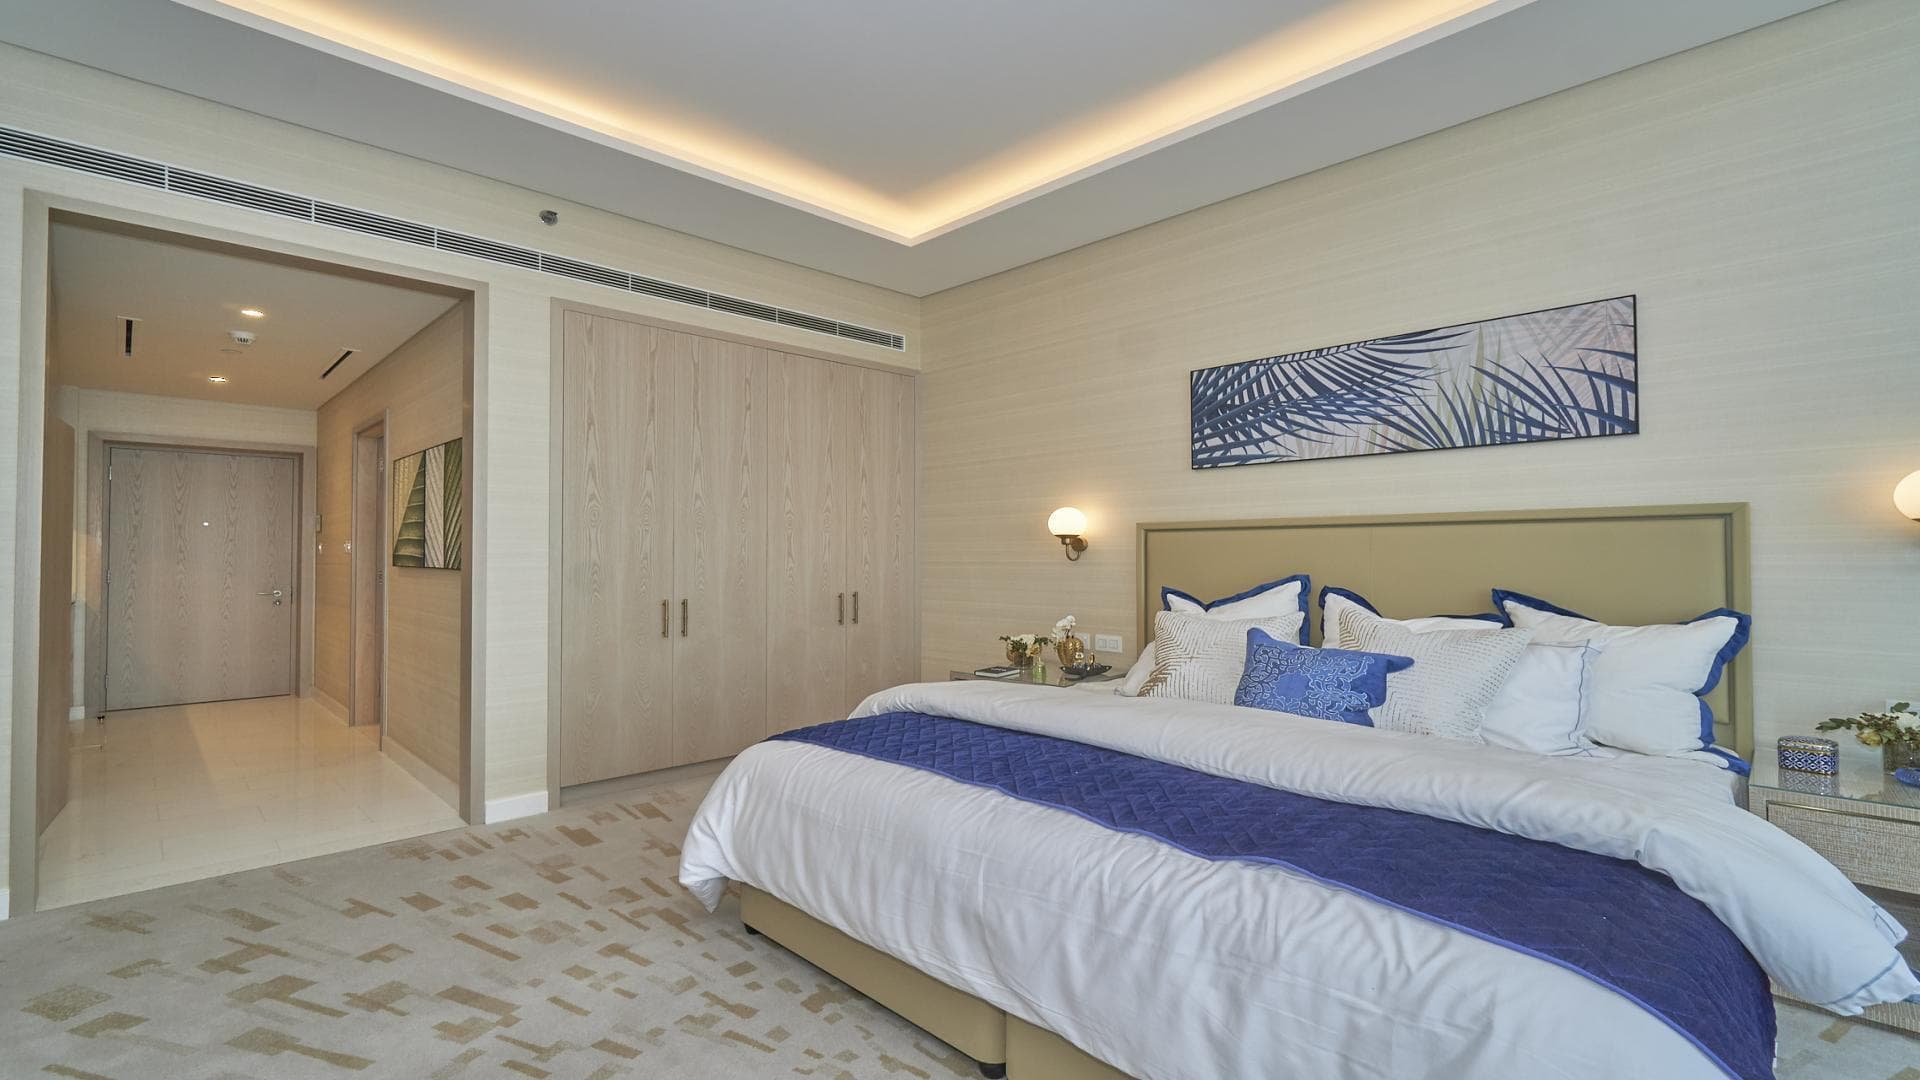 99 Bedroom Apartment For Rent Al Majara 5 Lp39076 2b7f7dc62777e40.jpg